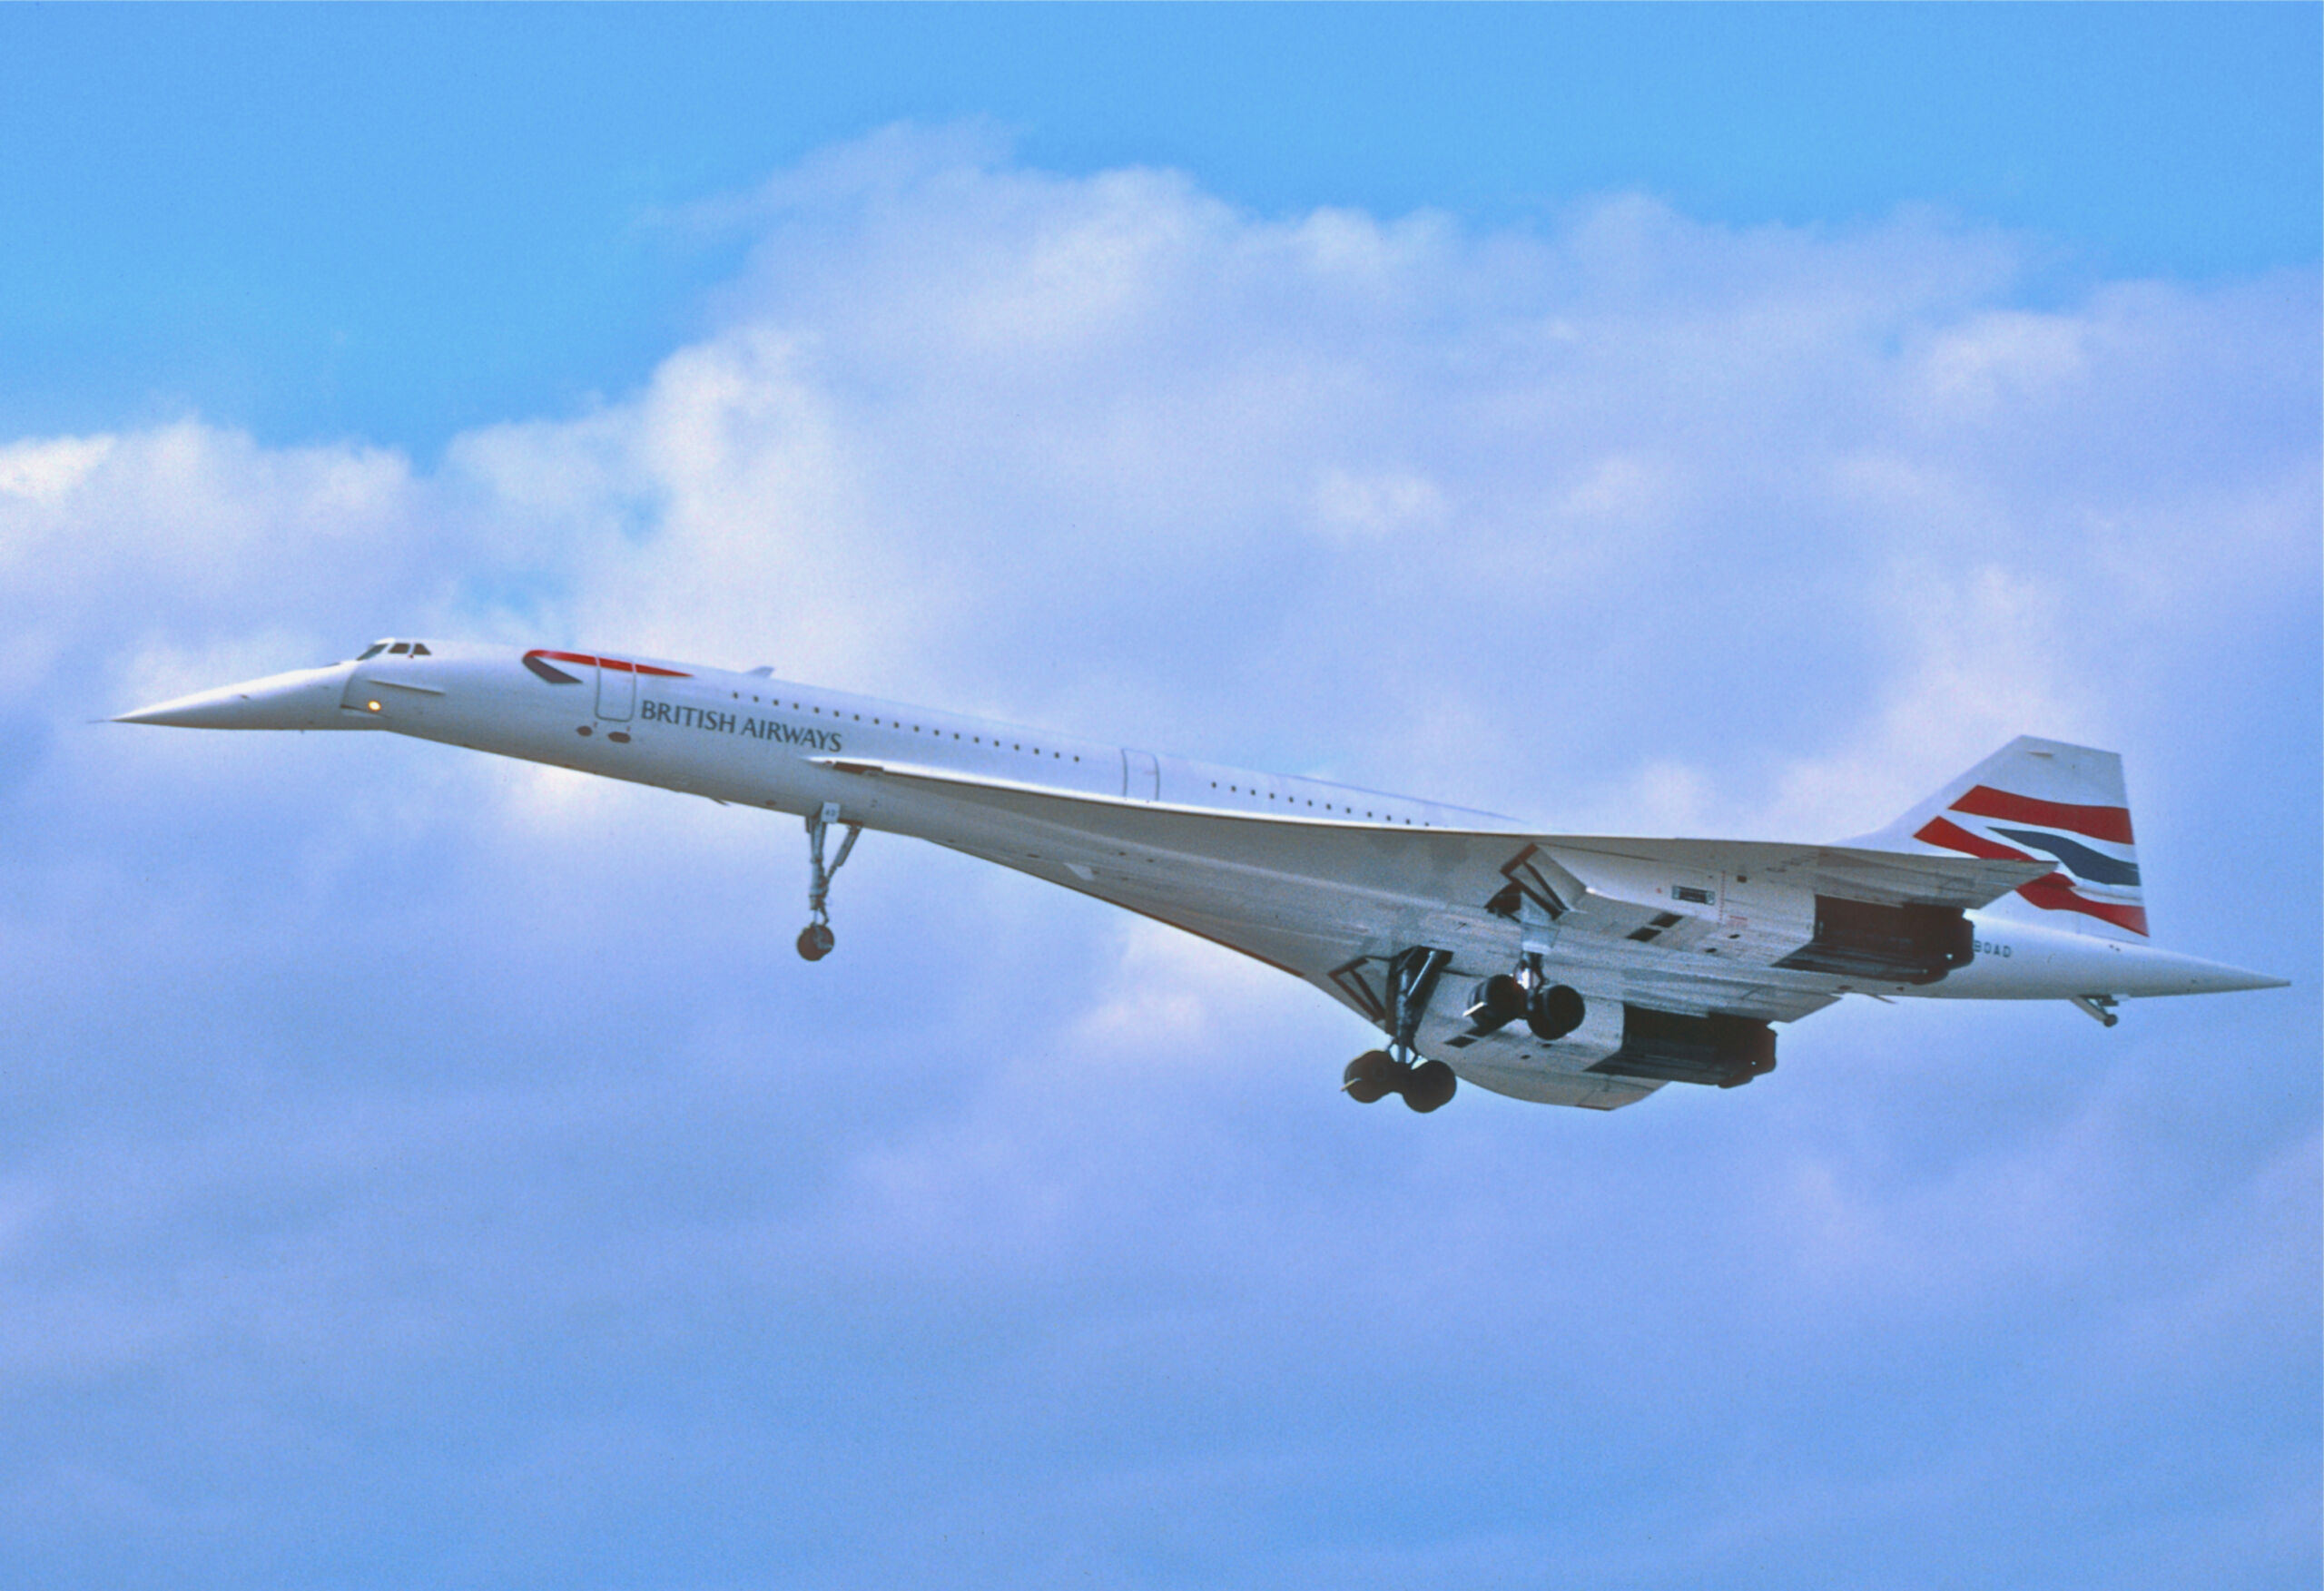 https://www.findlight.net/blog/wp-content/uploads/2023/03/235ac_-_British_Airways_Concorde_G-BOAD@LHR15.05.2003_8056002570-scaled.jpg